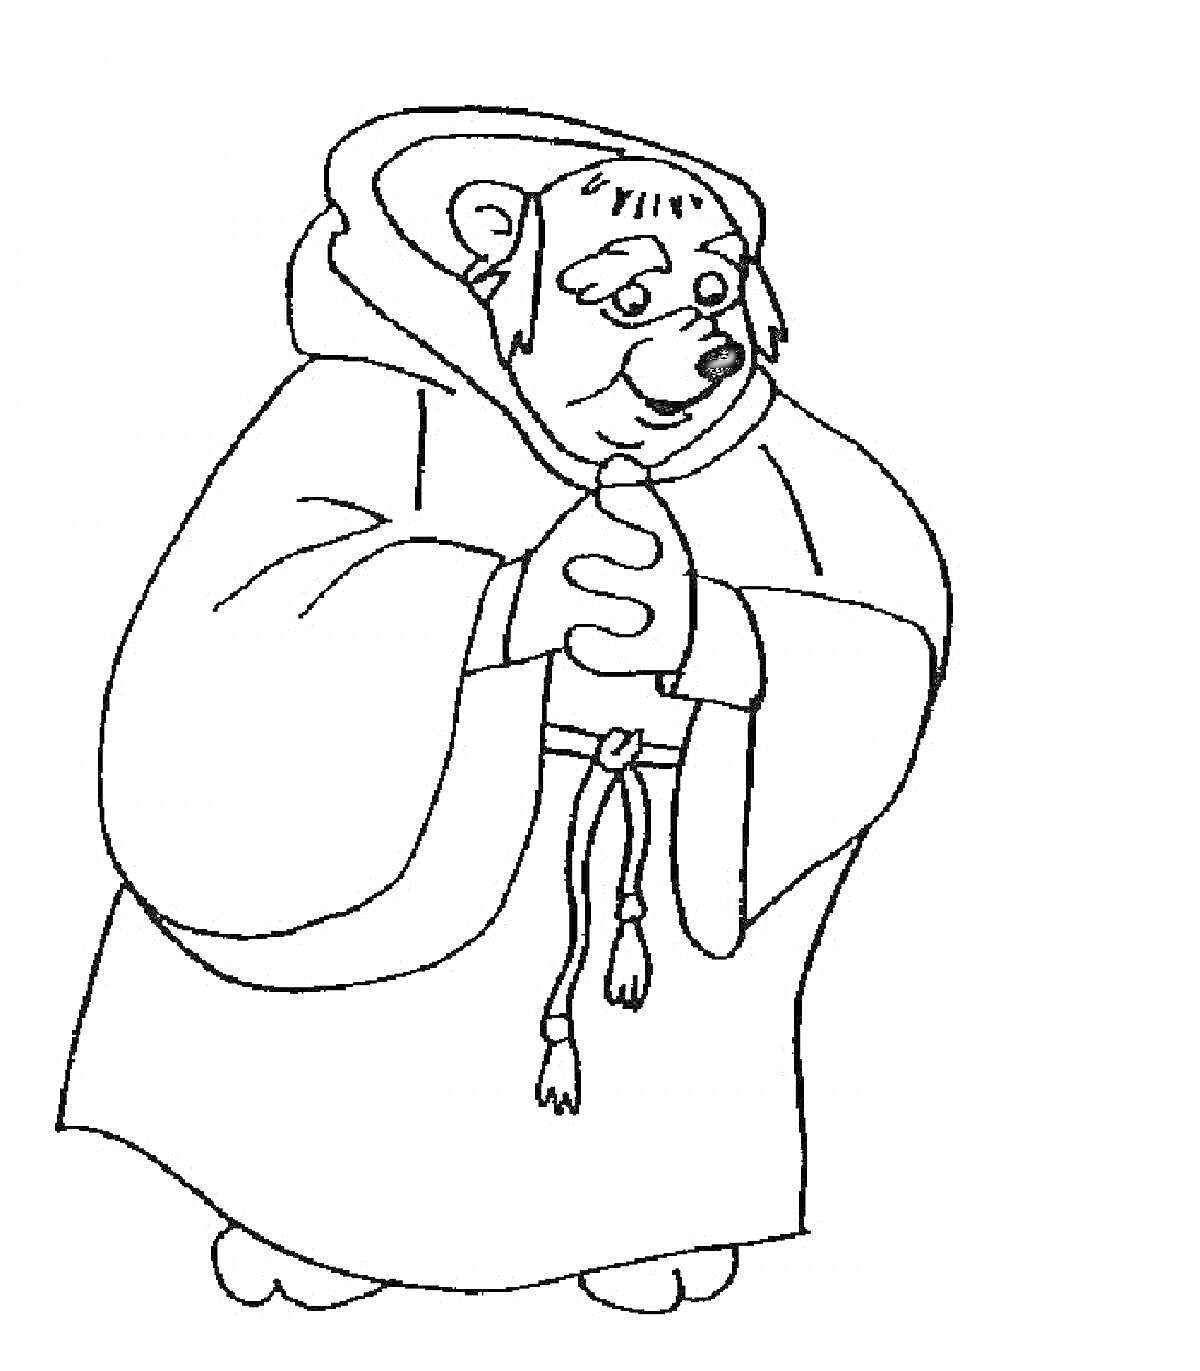 Медведь в монашеском одеянии с капюшоном, с завязанным шнурком на талии, руки сложены, взгляд направлен вниз